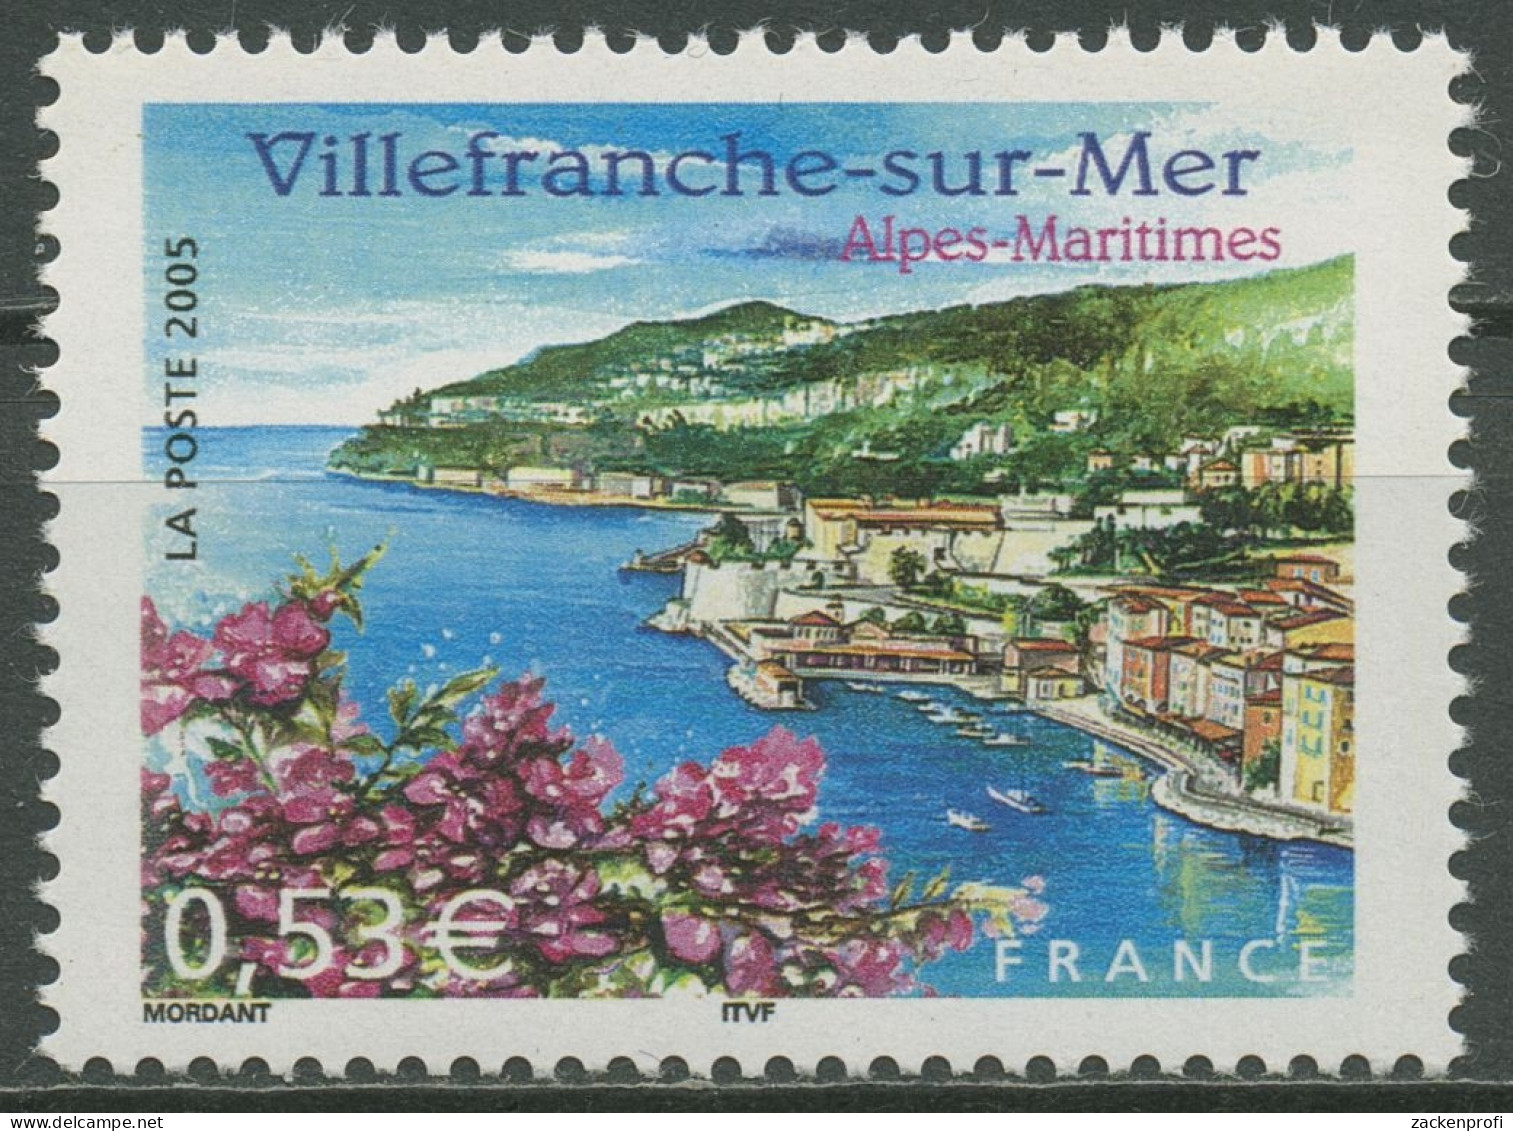 Frankreich 2005 Tourismus Stadtansicht Villefranche-sur-Mer 3954 Postfrisch - Ungebraucht